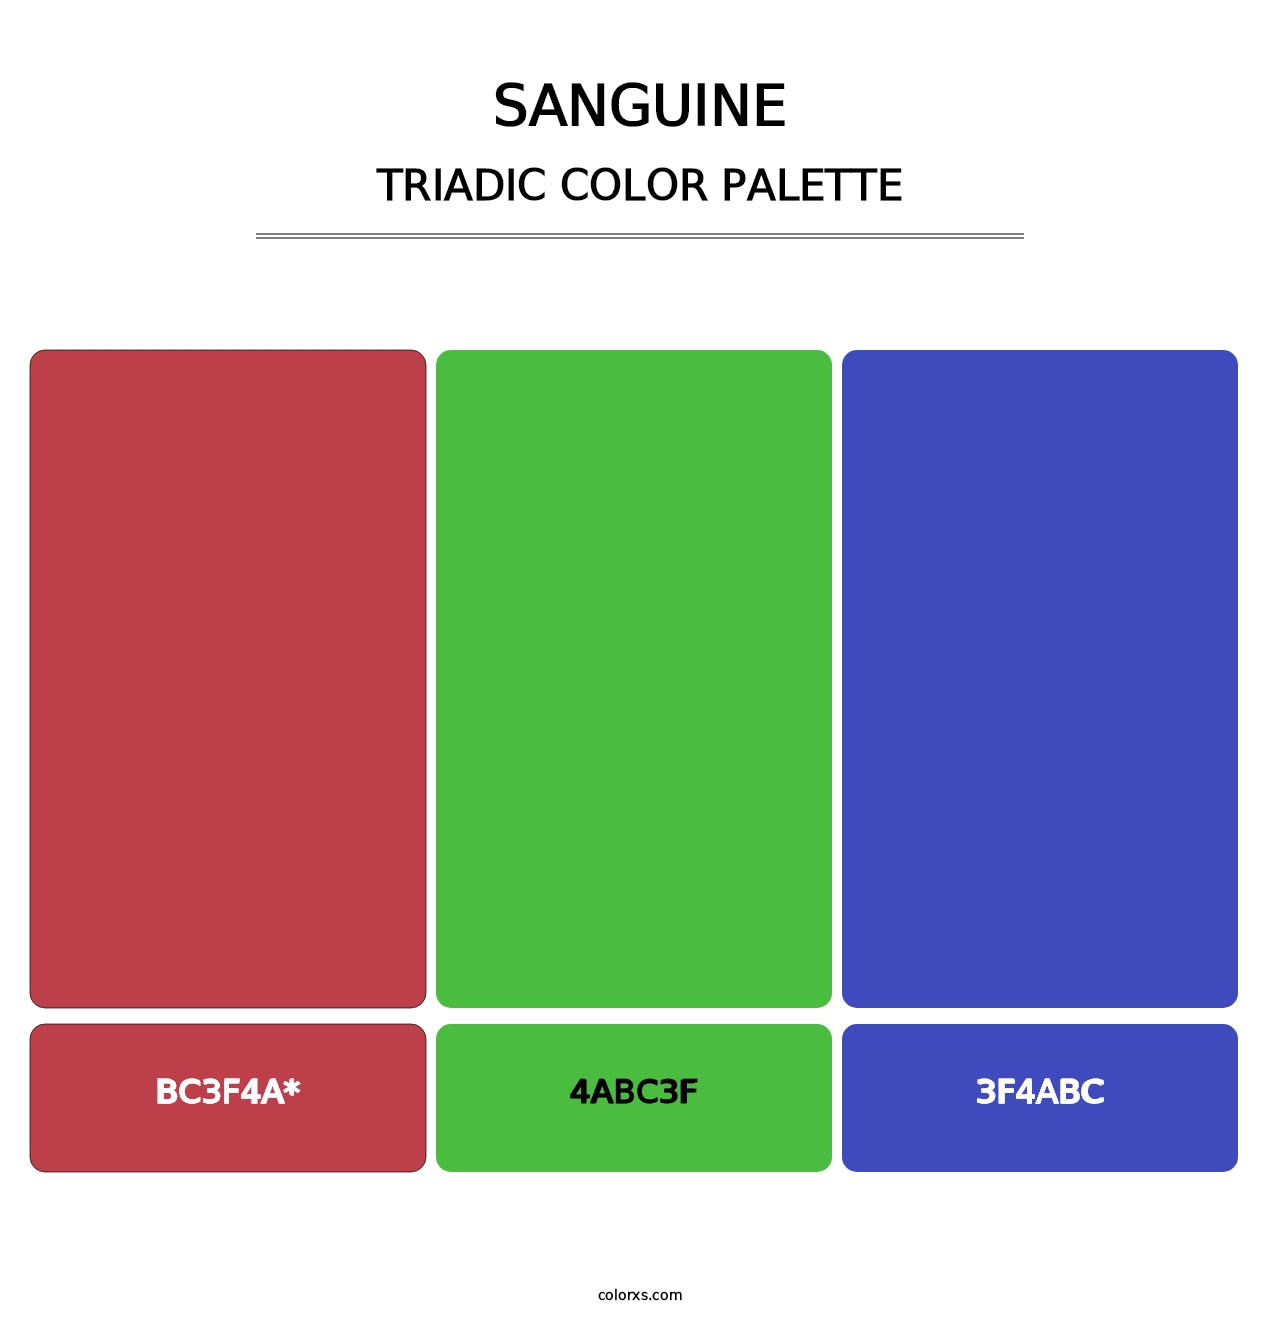 Sanguine - Triadic Color Palette